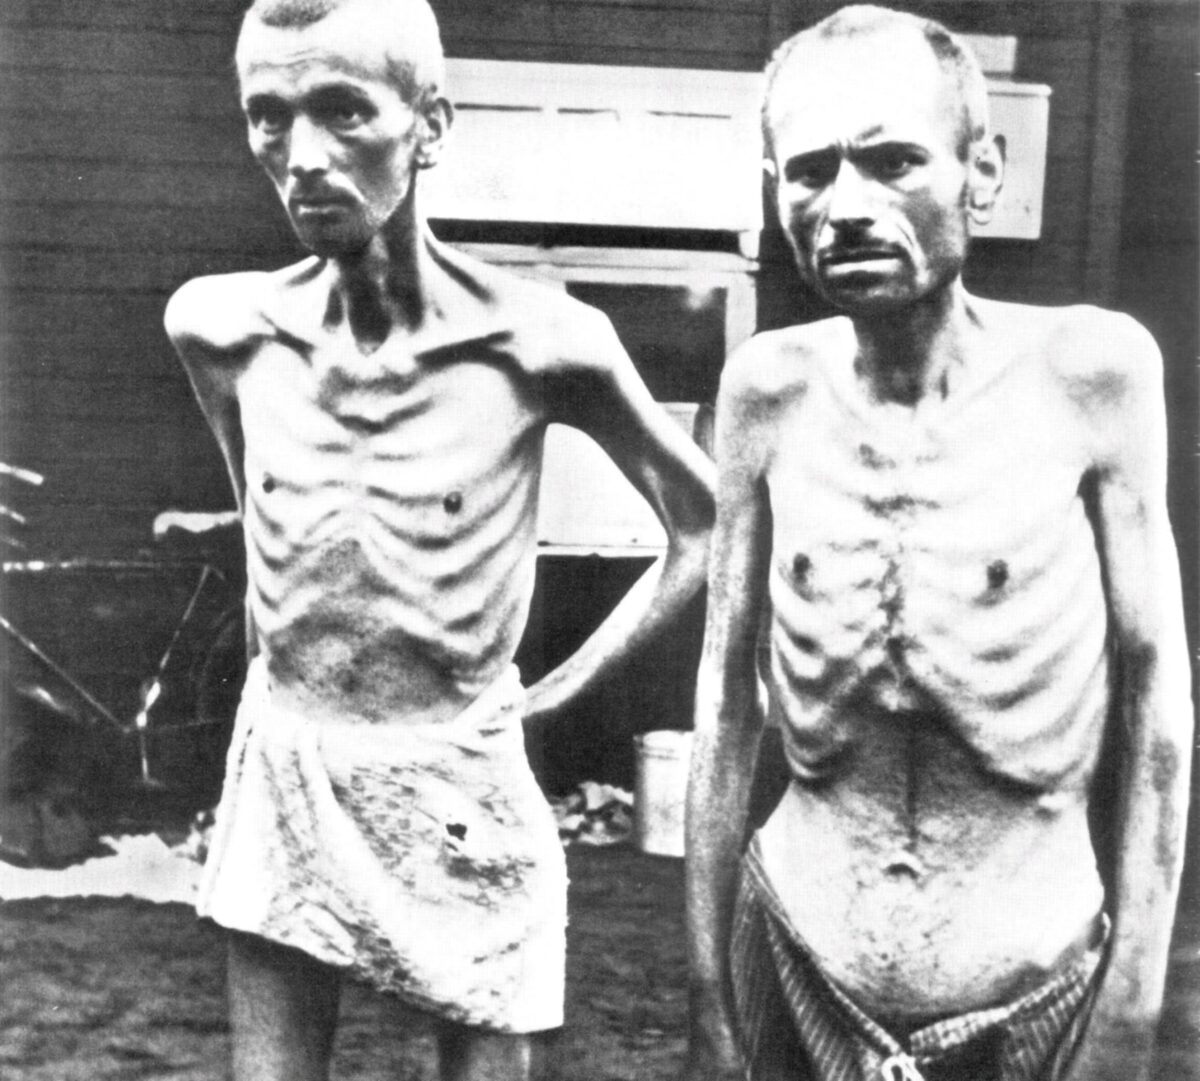 prisoners of the concentration camp Ravensbrück